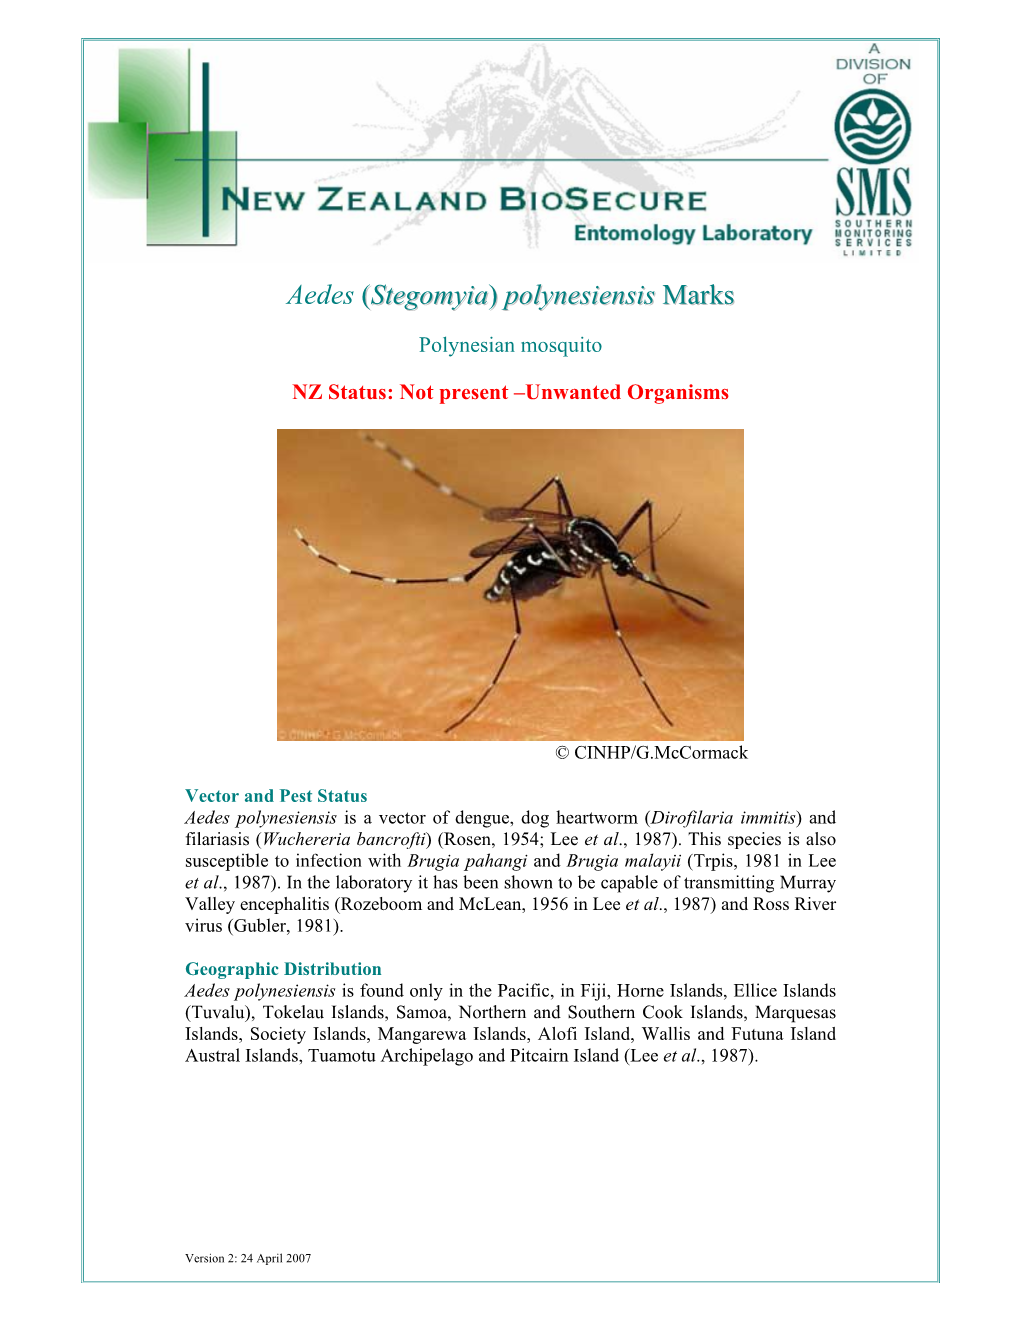 Aedes (Stegomyia) Polynesiensis Marks